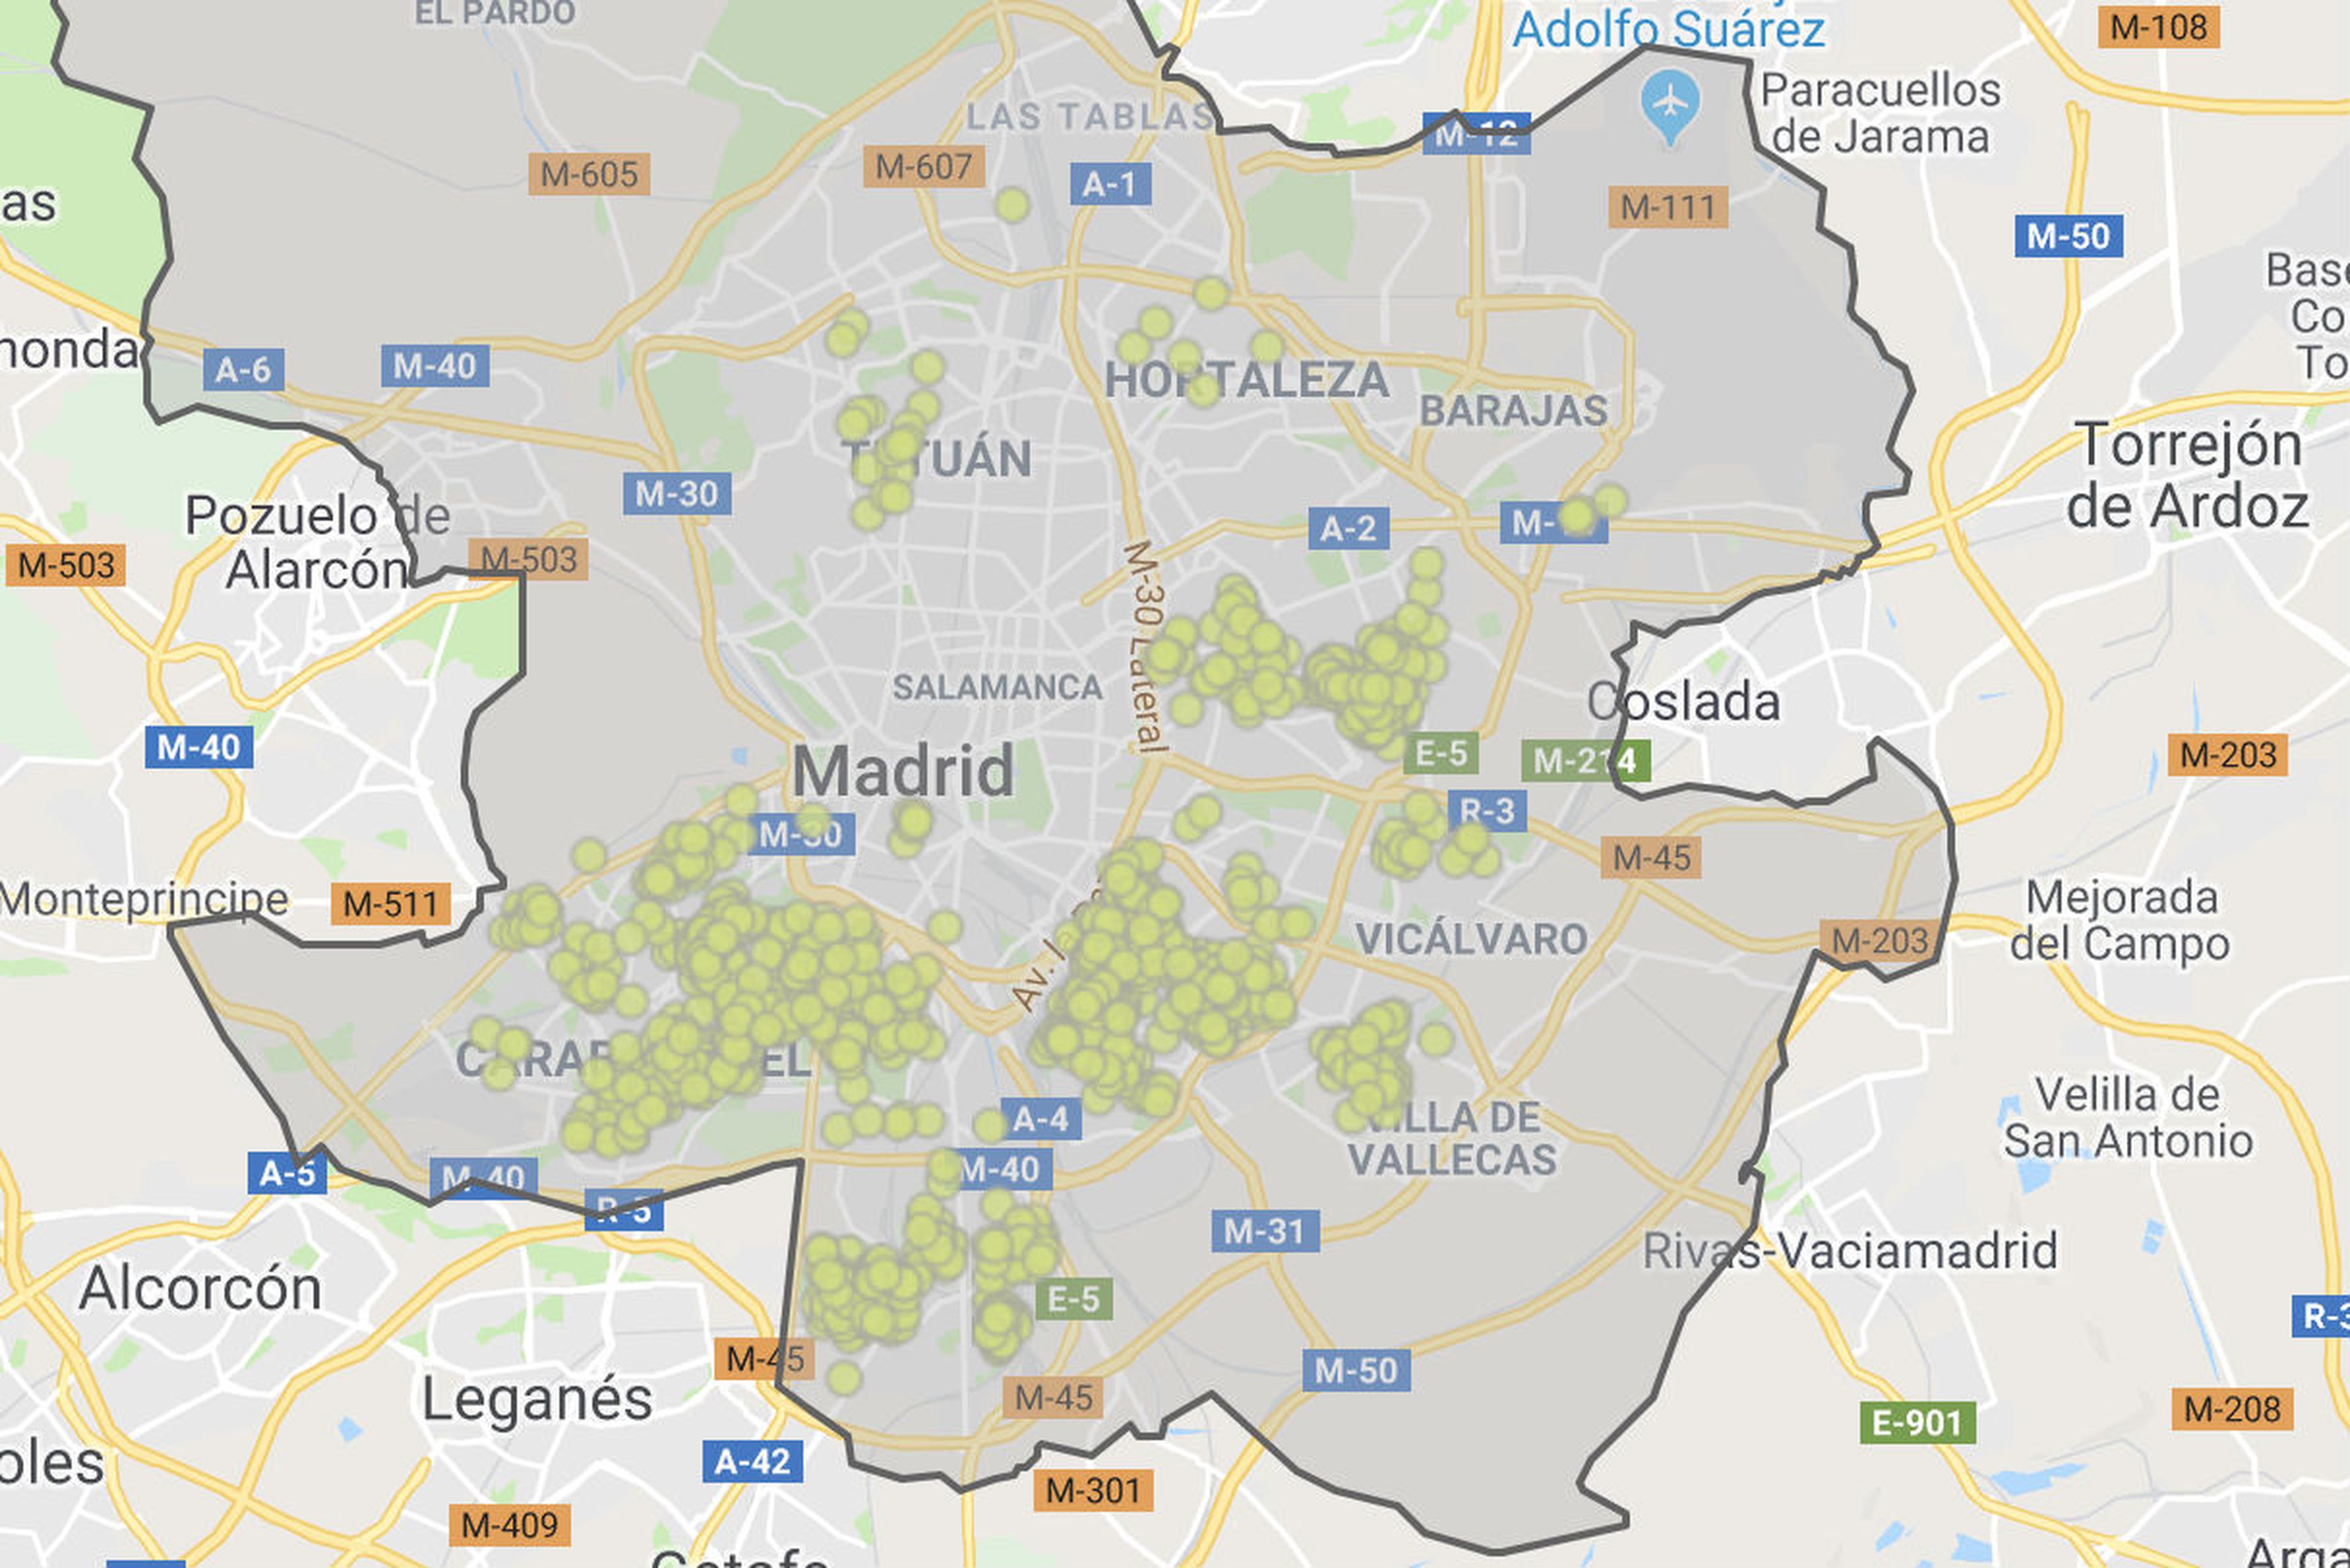 Pisos de 2 o más habitaciones por 120.000 euros o menos en Madrid